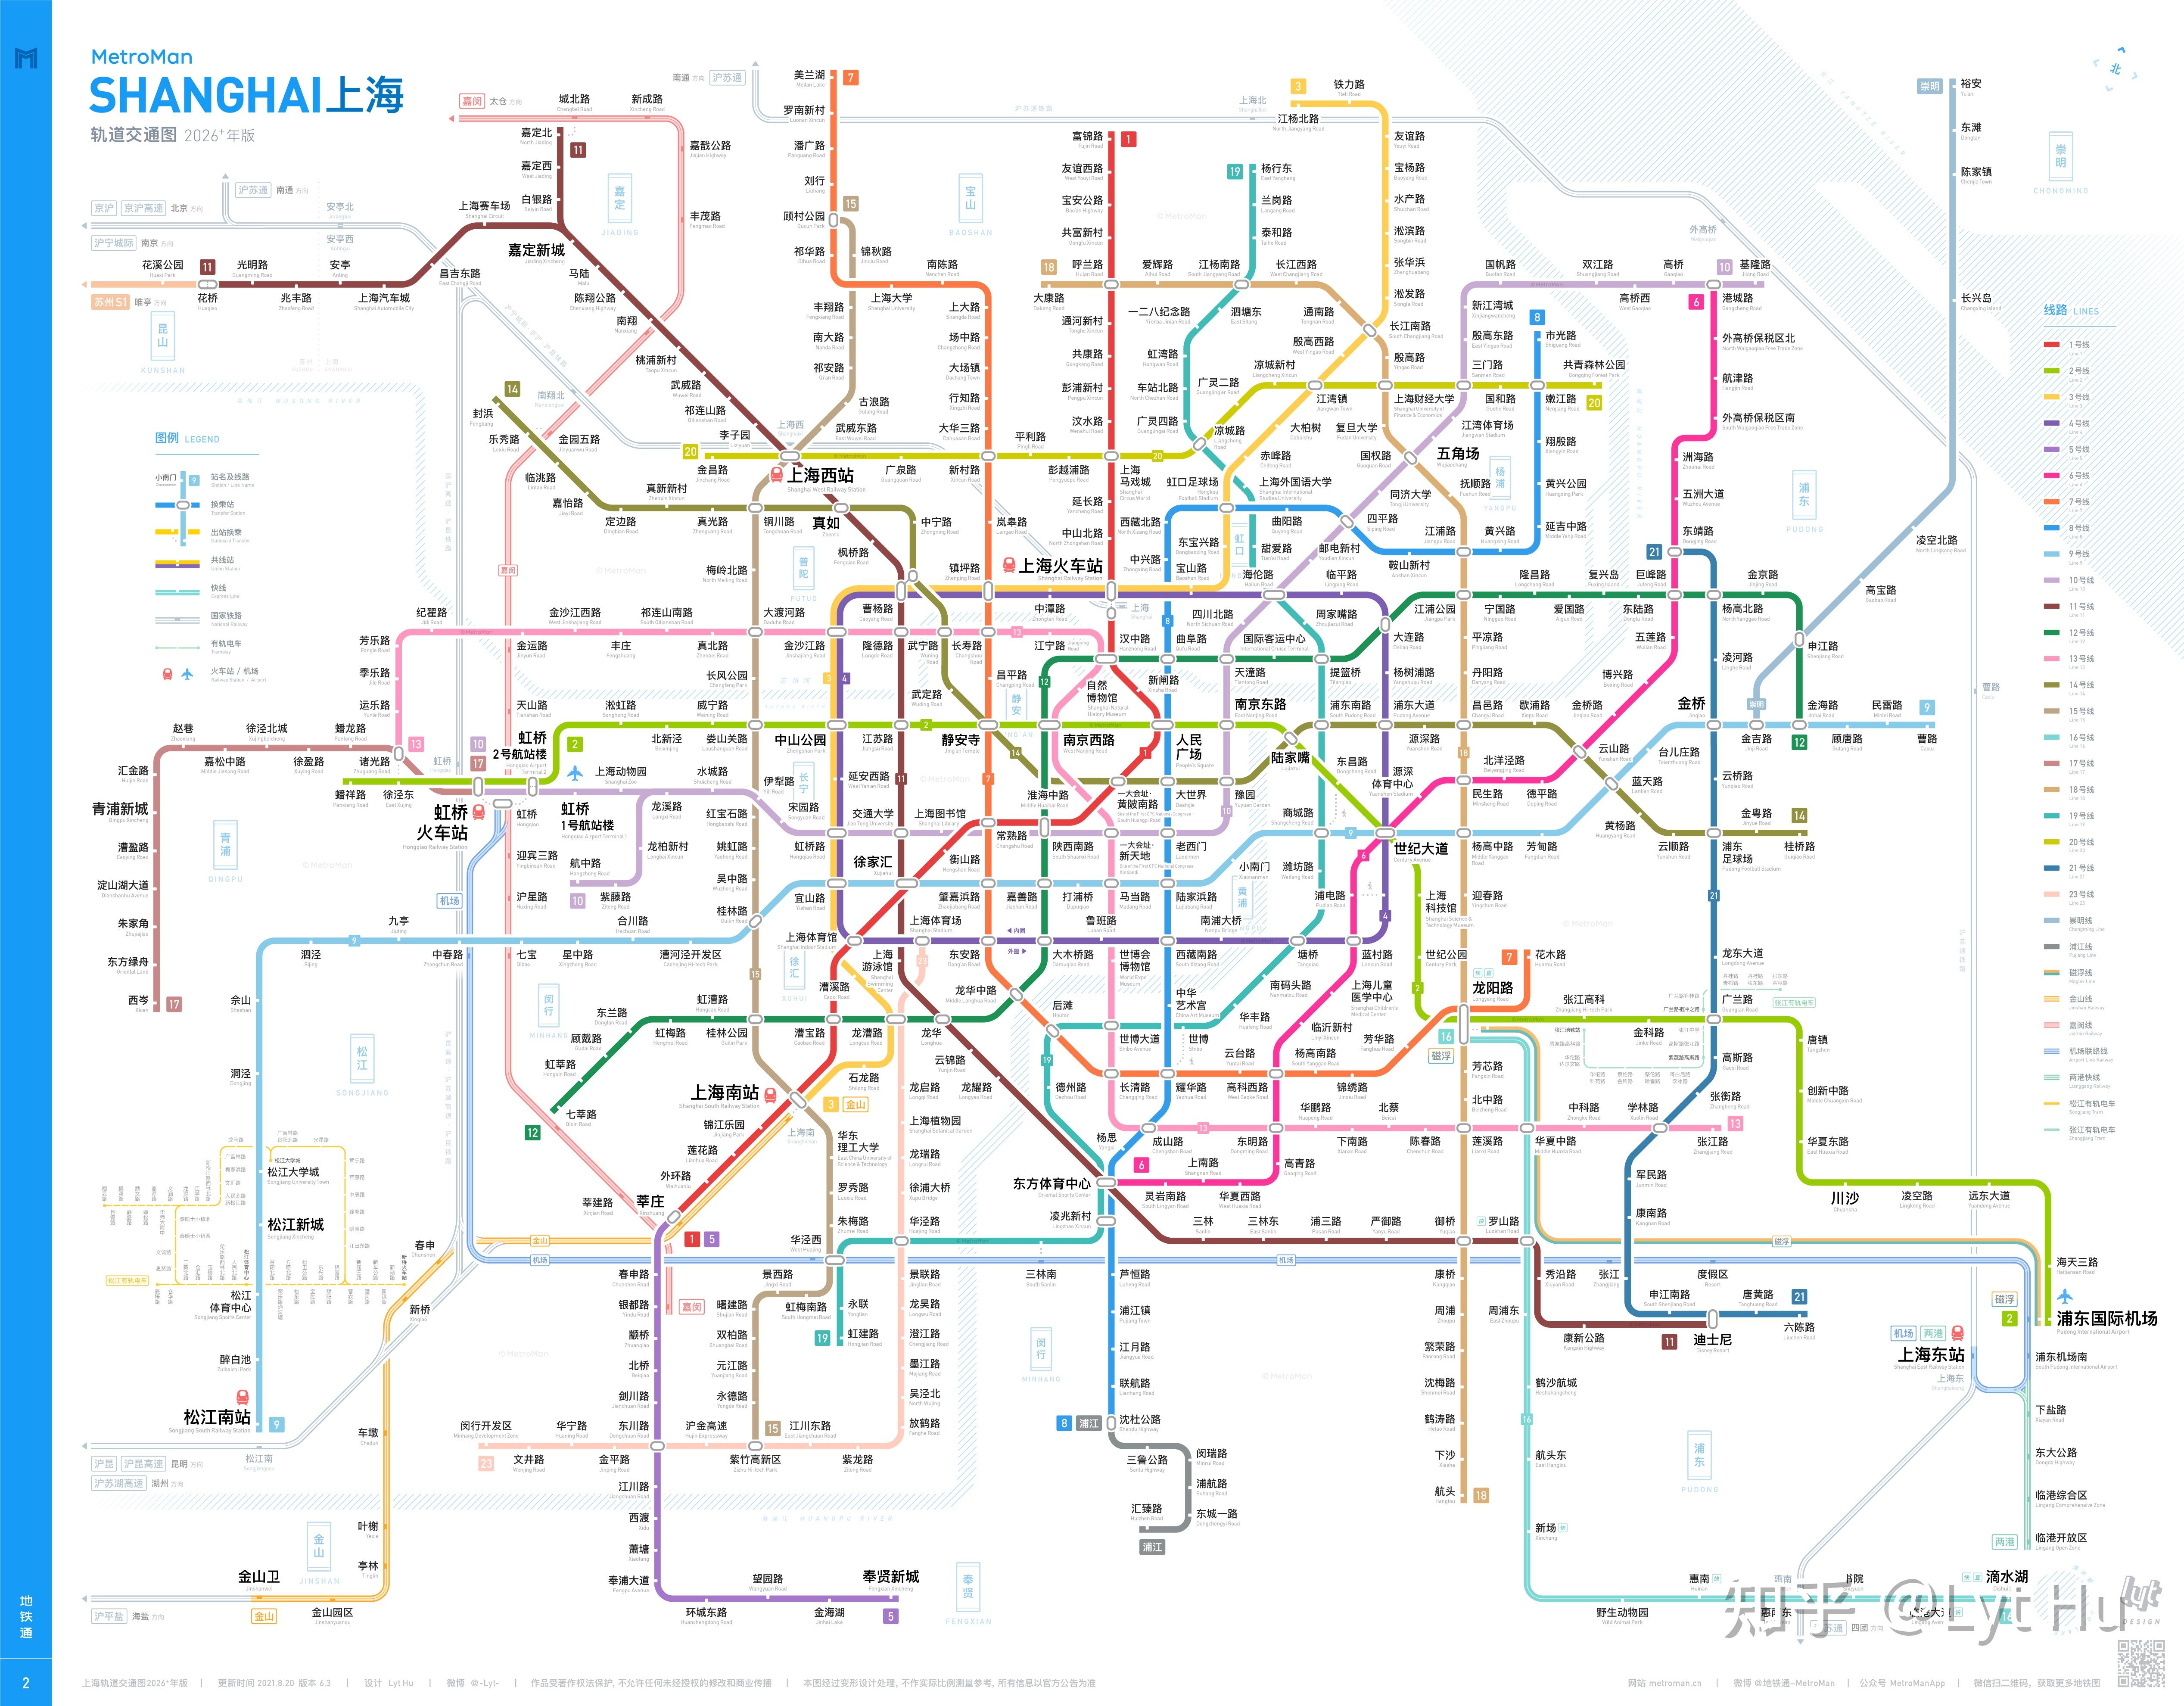 > 地铁通线路图 > 上海文件夹下地铁通